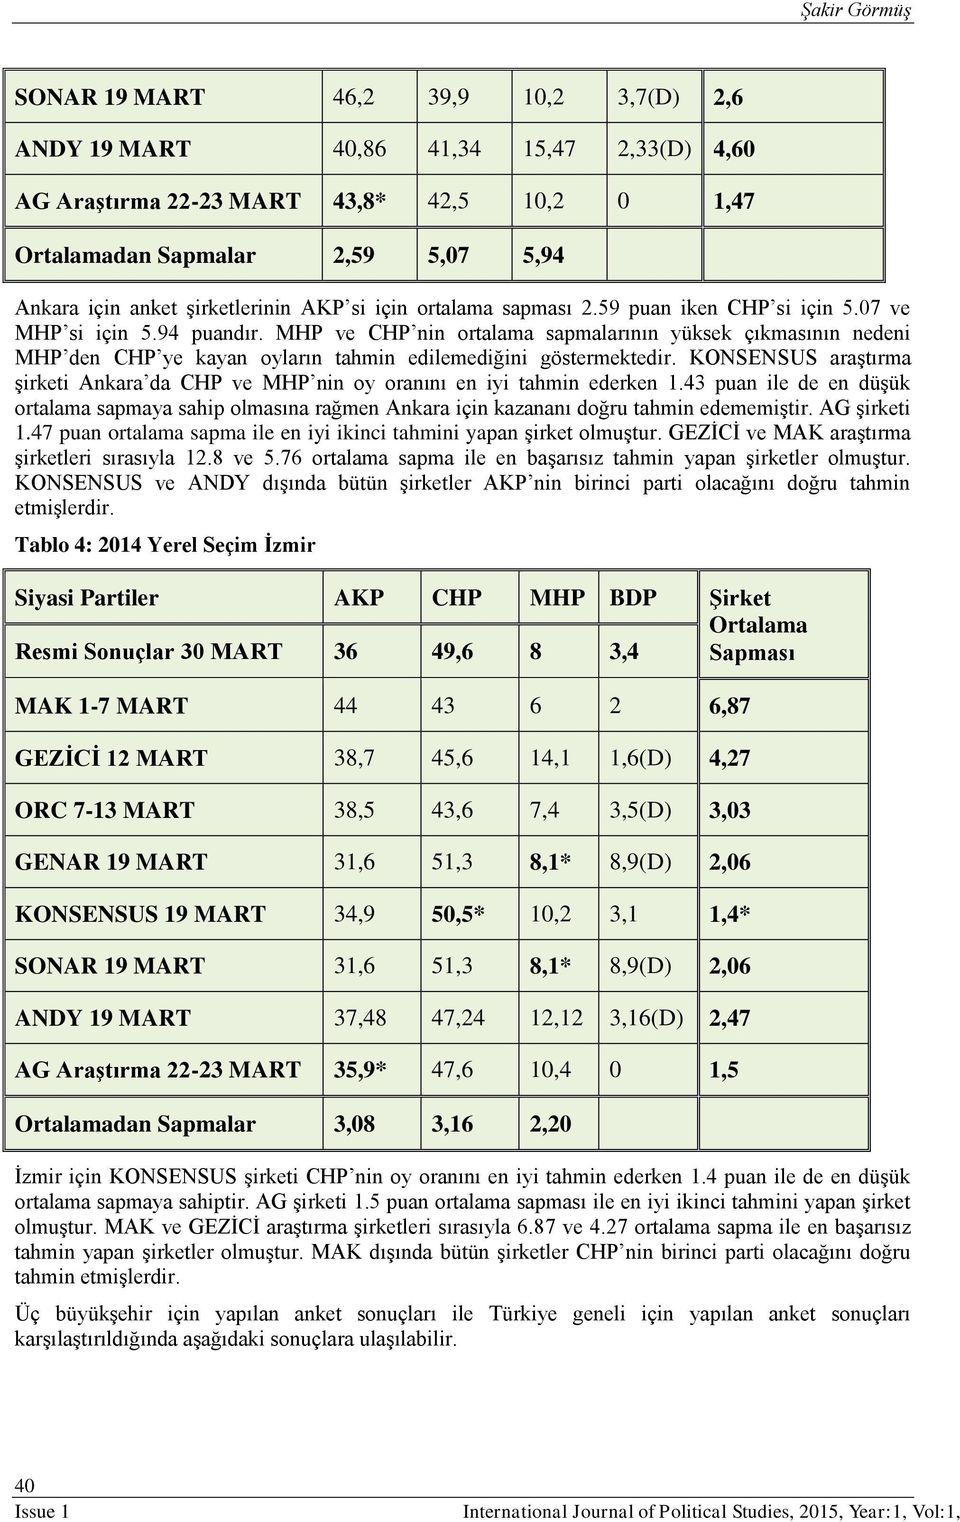 MHP ve CHP nin ortalama sapmalarının yüksek çıkmasının nedeni MHP den CHP ye kayan oyların tahmin edilemediğini göstermektedir.